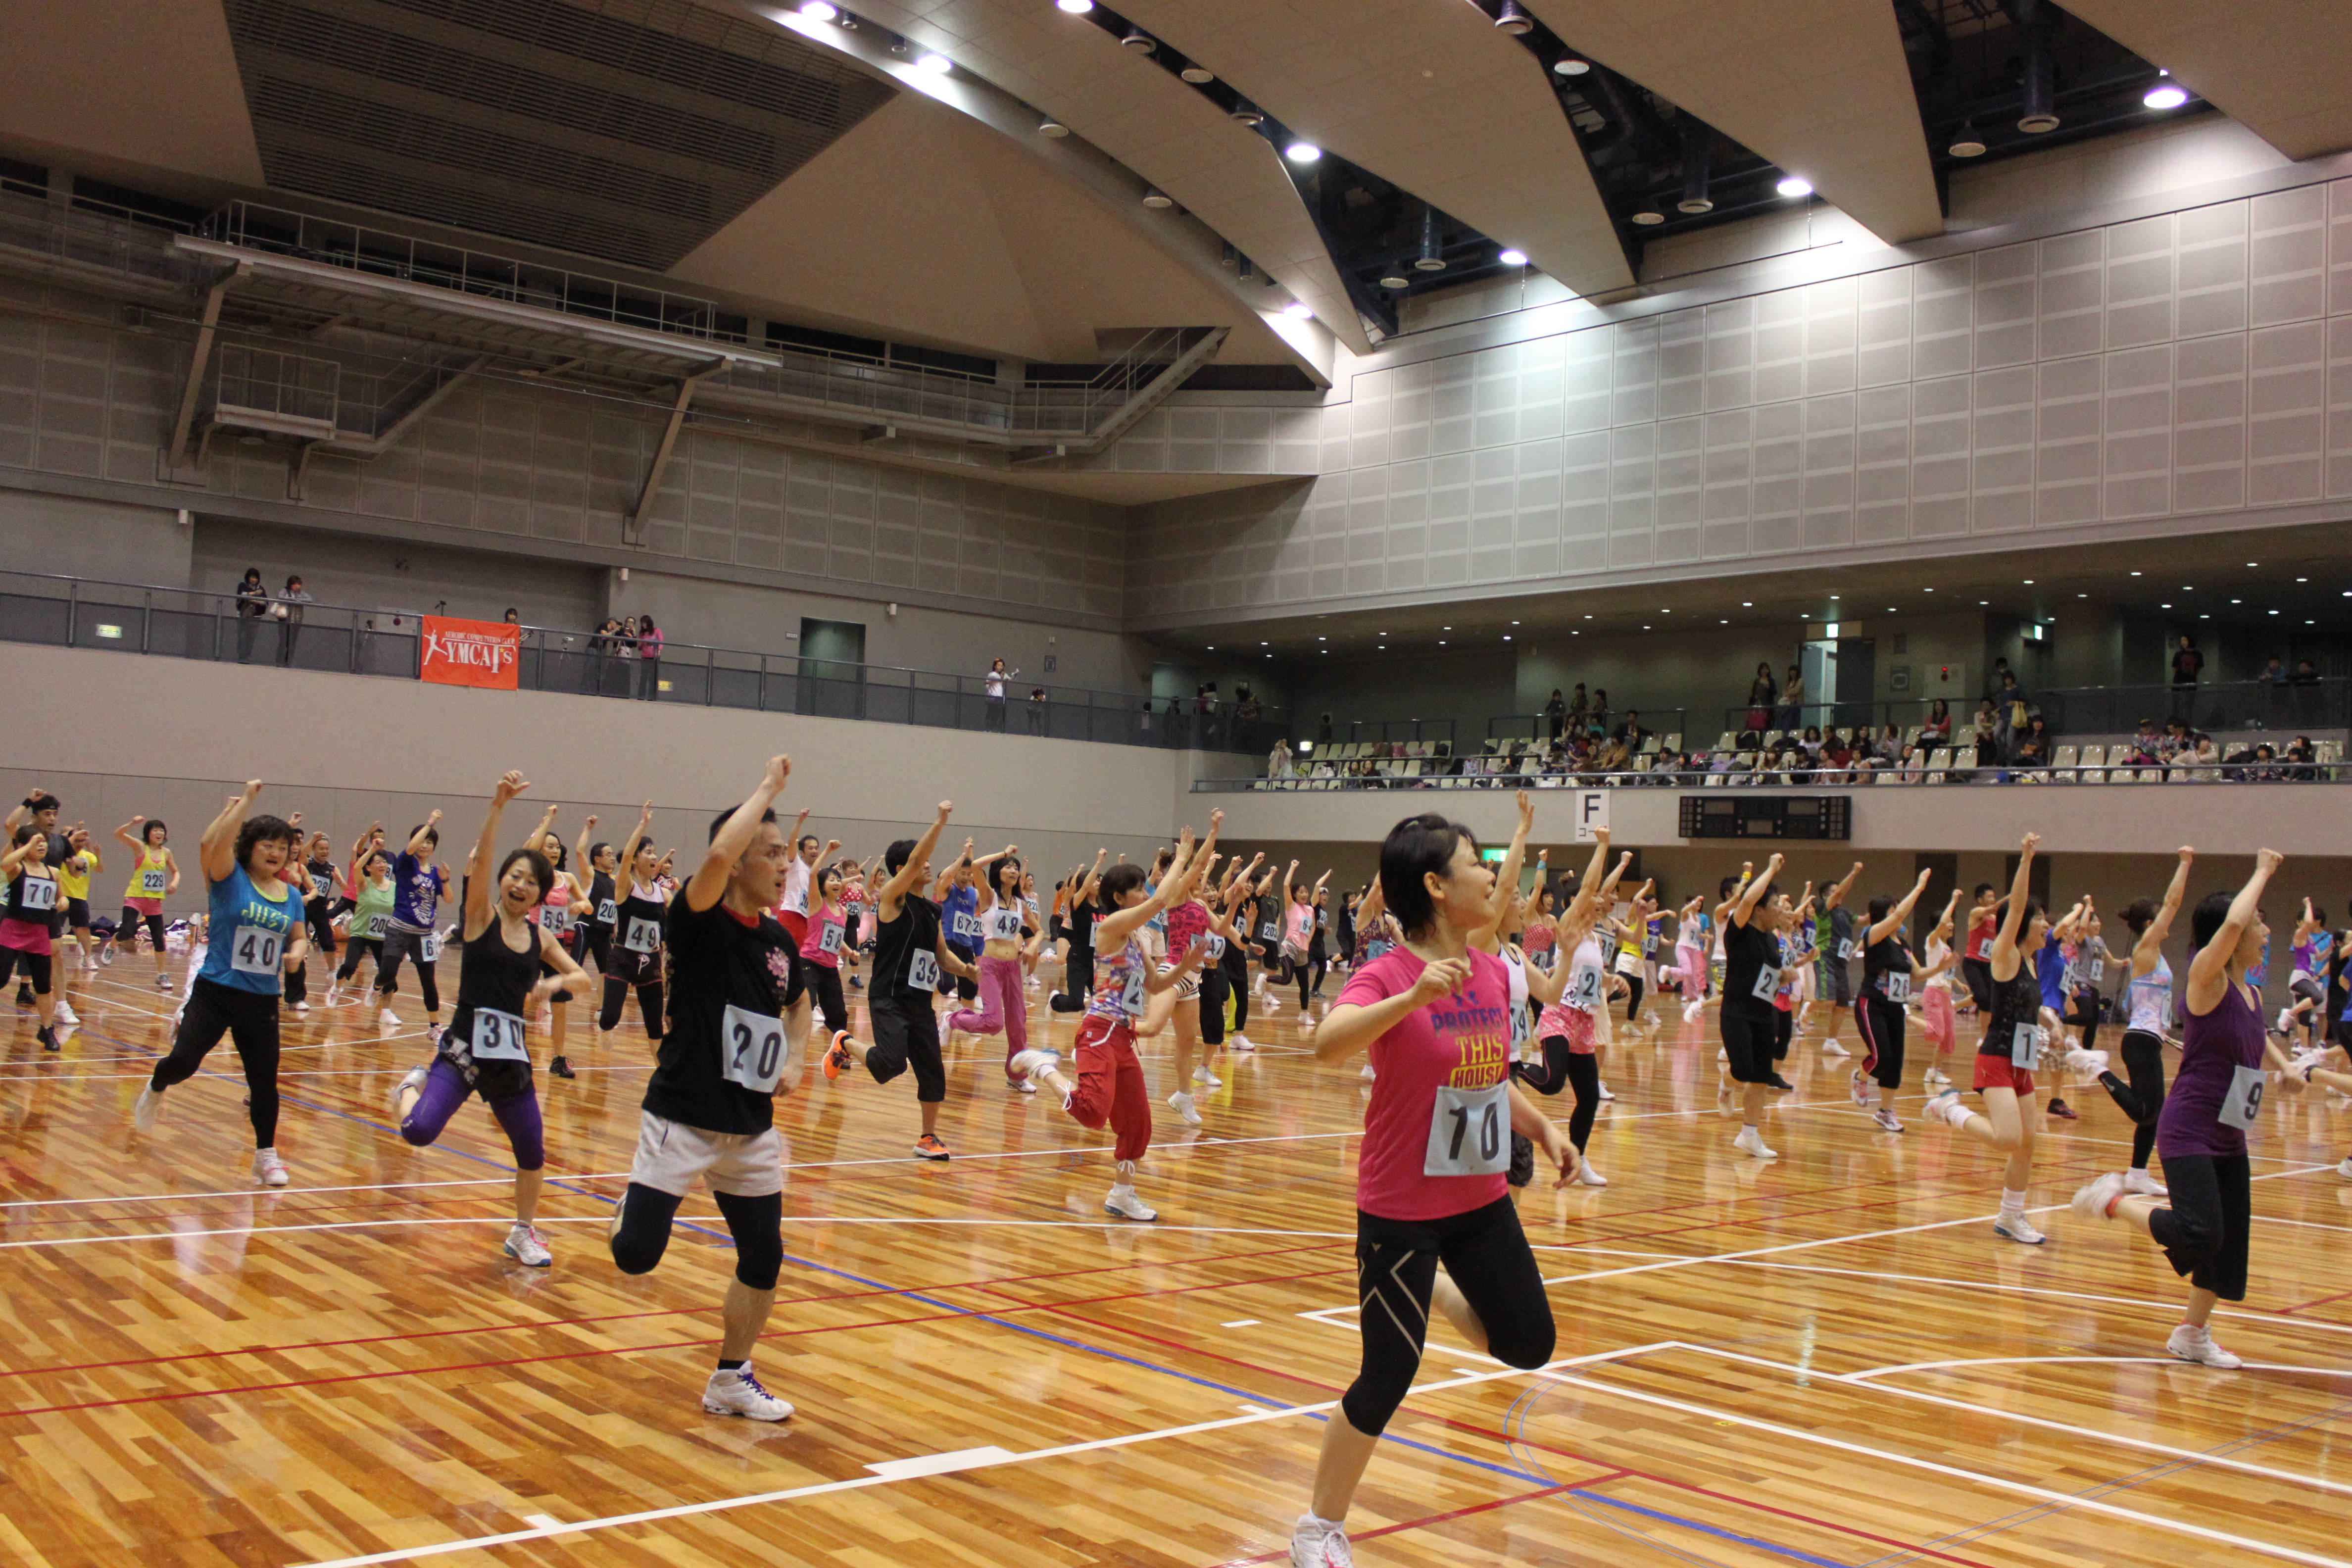 広島のエアロビクス ダンス フィットネスを楽しむ祭典 Enｊoy Fitness カーニバル開催 ひろスポ 広島スポーツニュースメディア